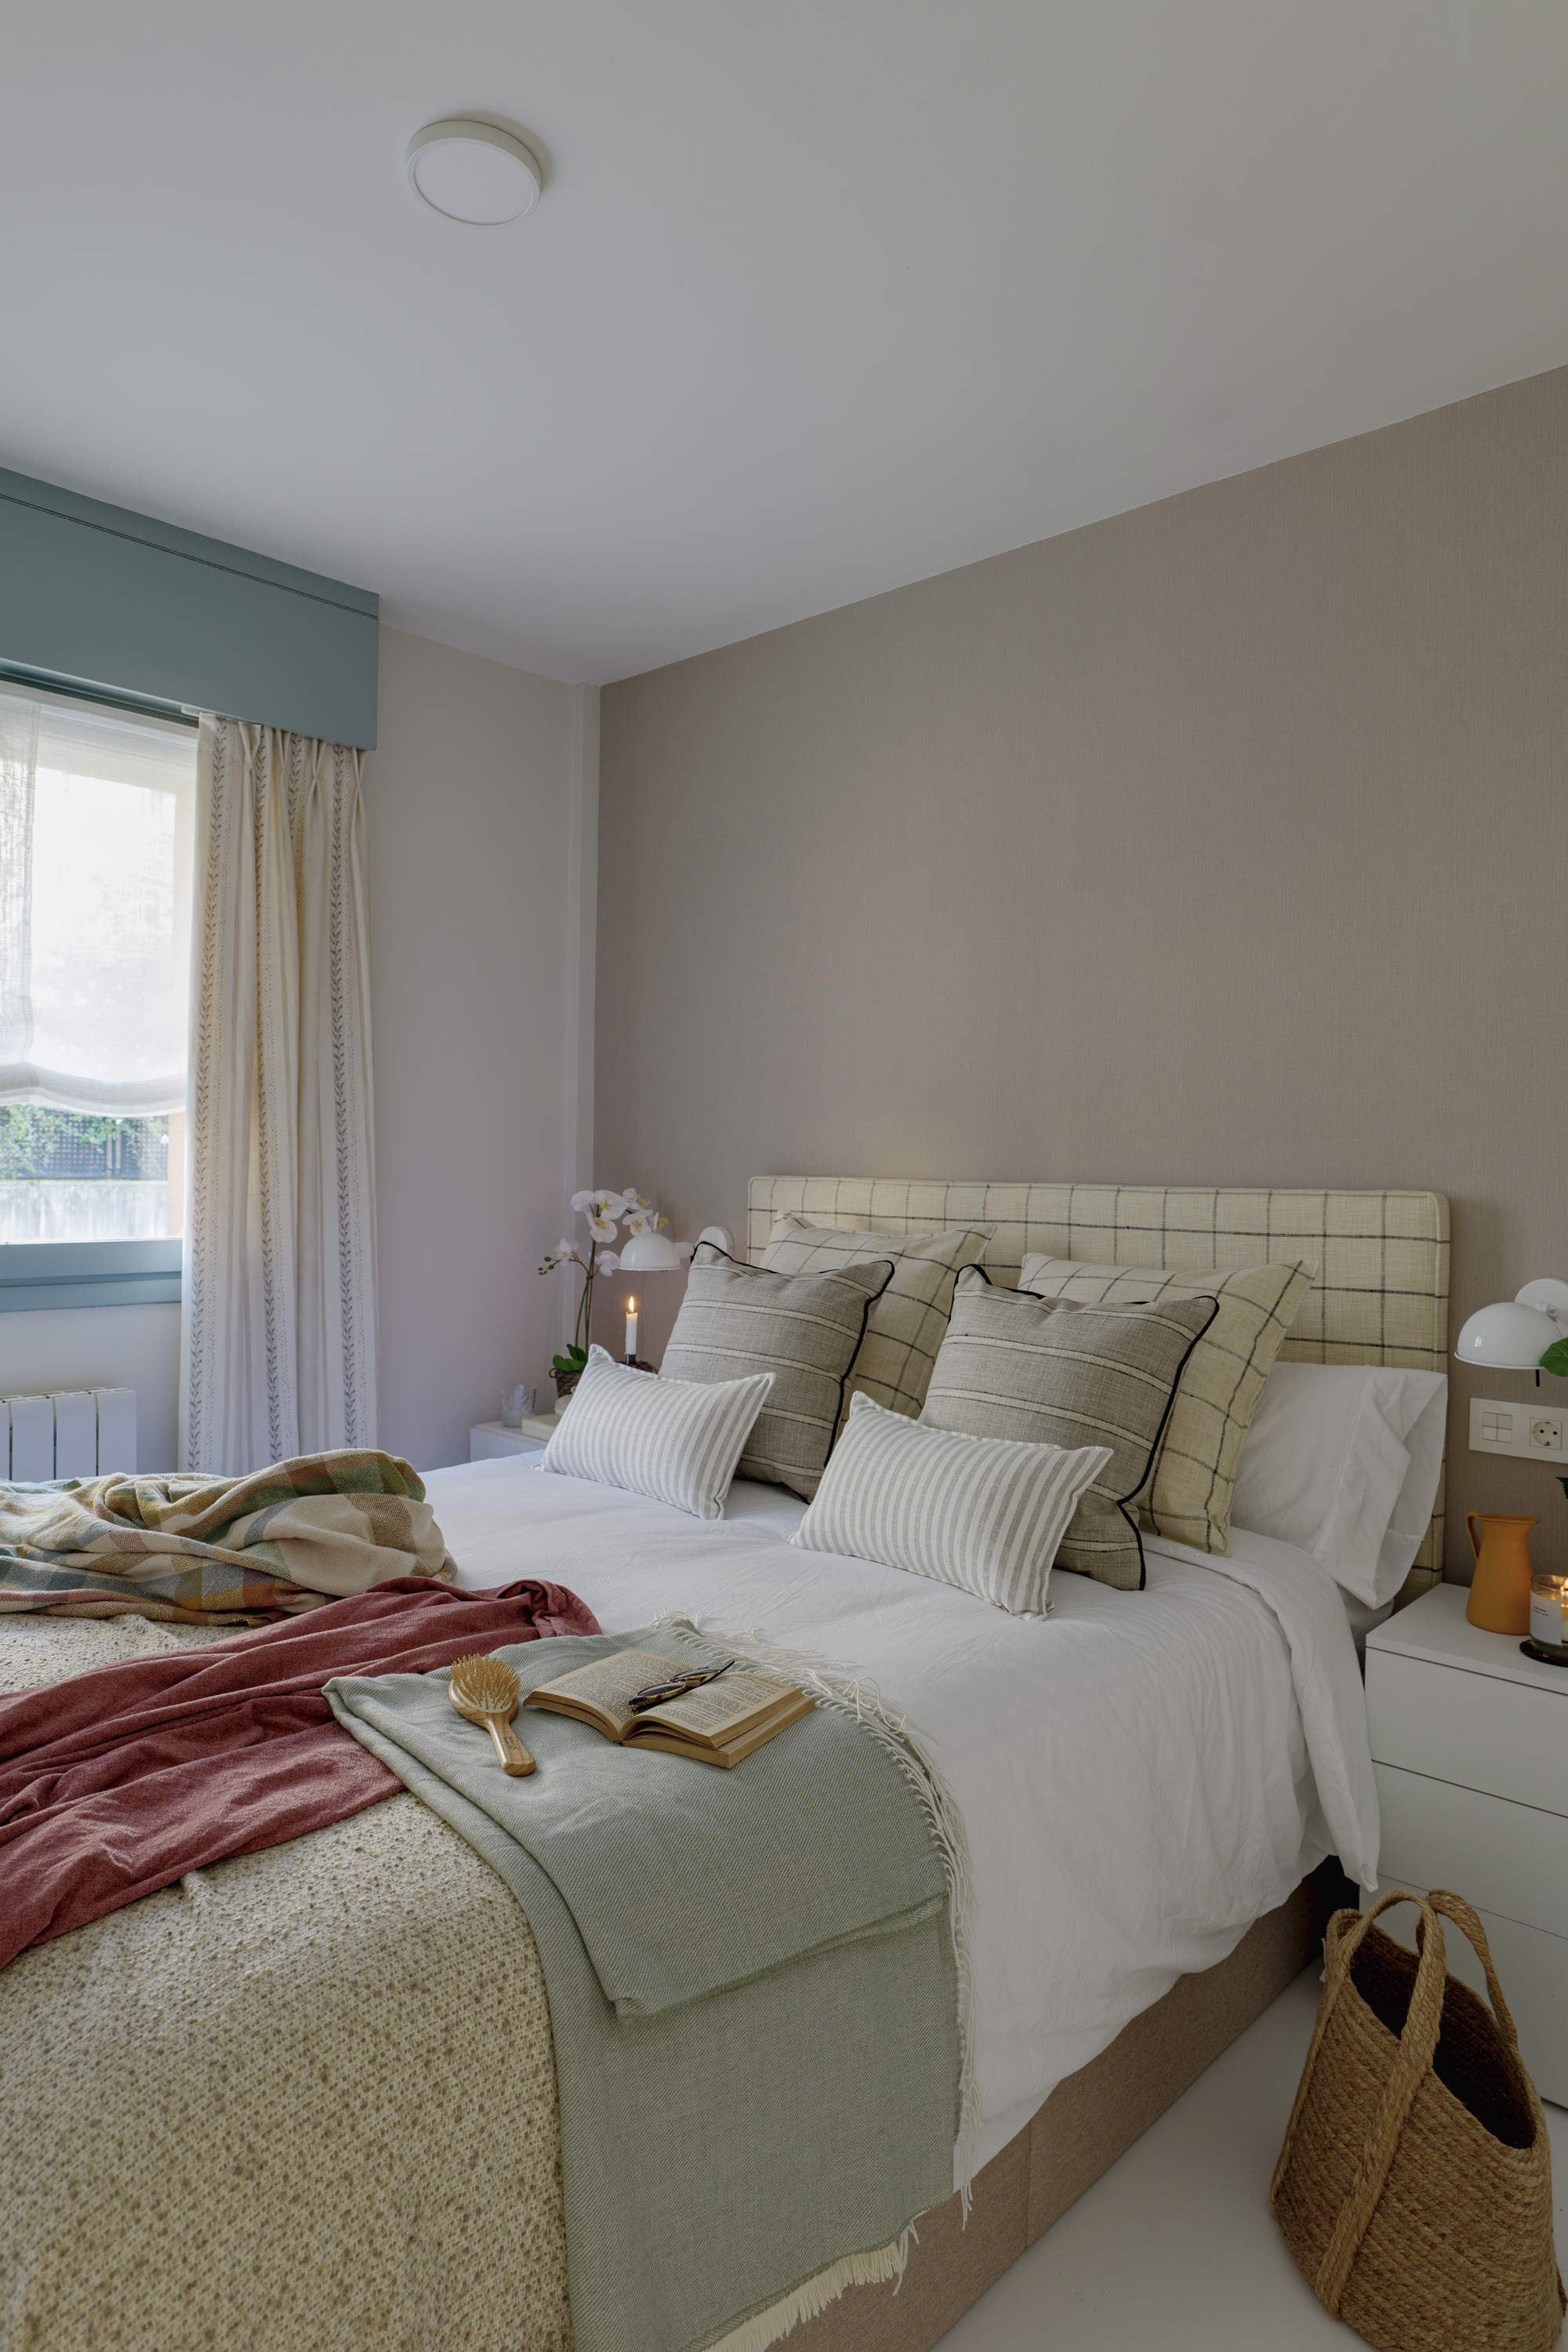 Dormitorio infantil en tonos beige, verde y teja con toques negros en los textiles.